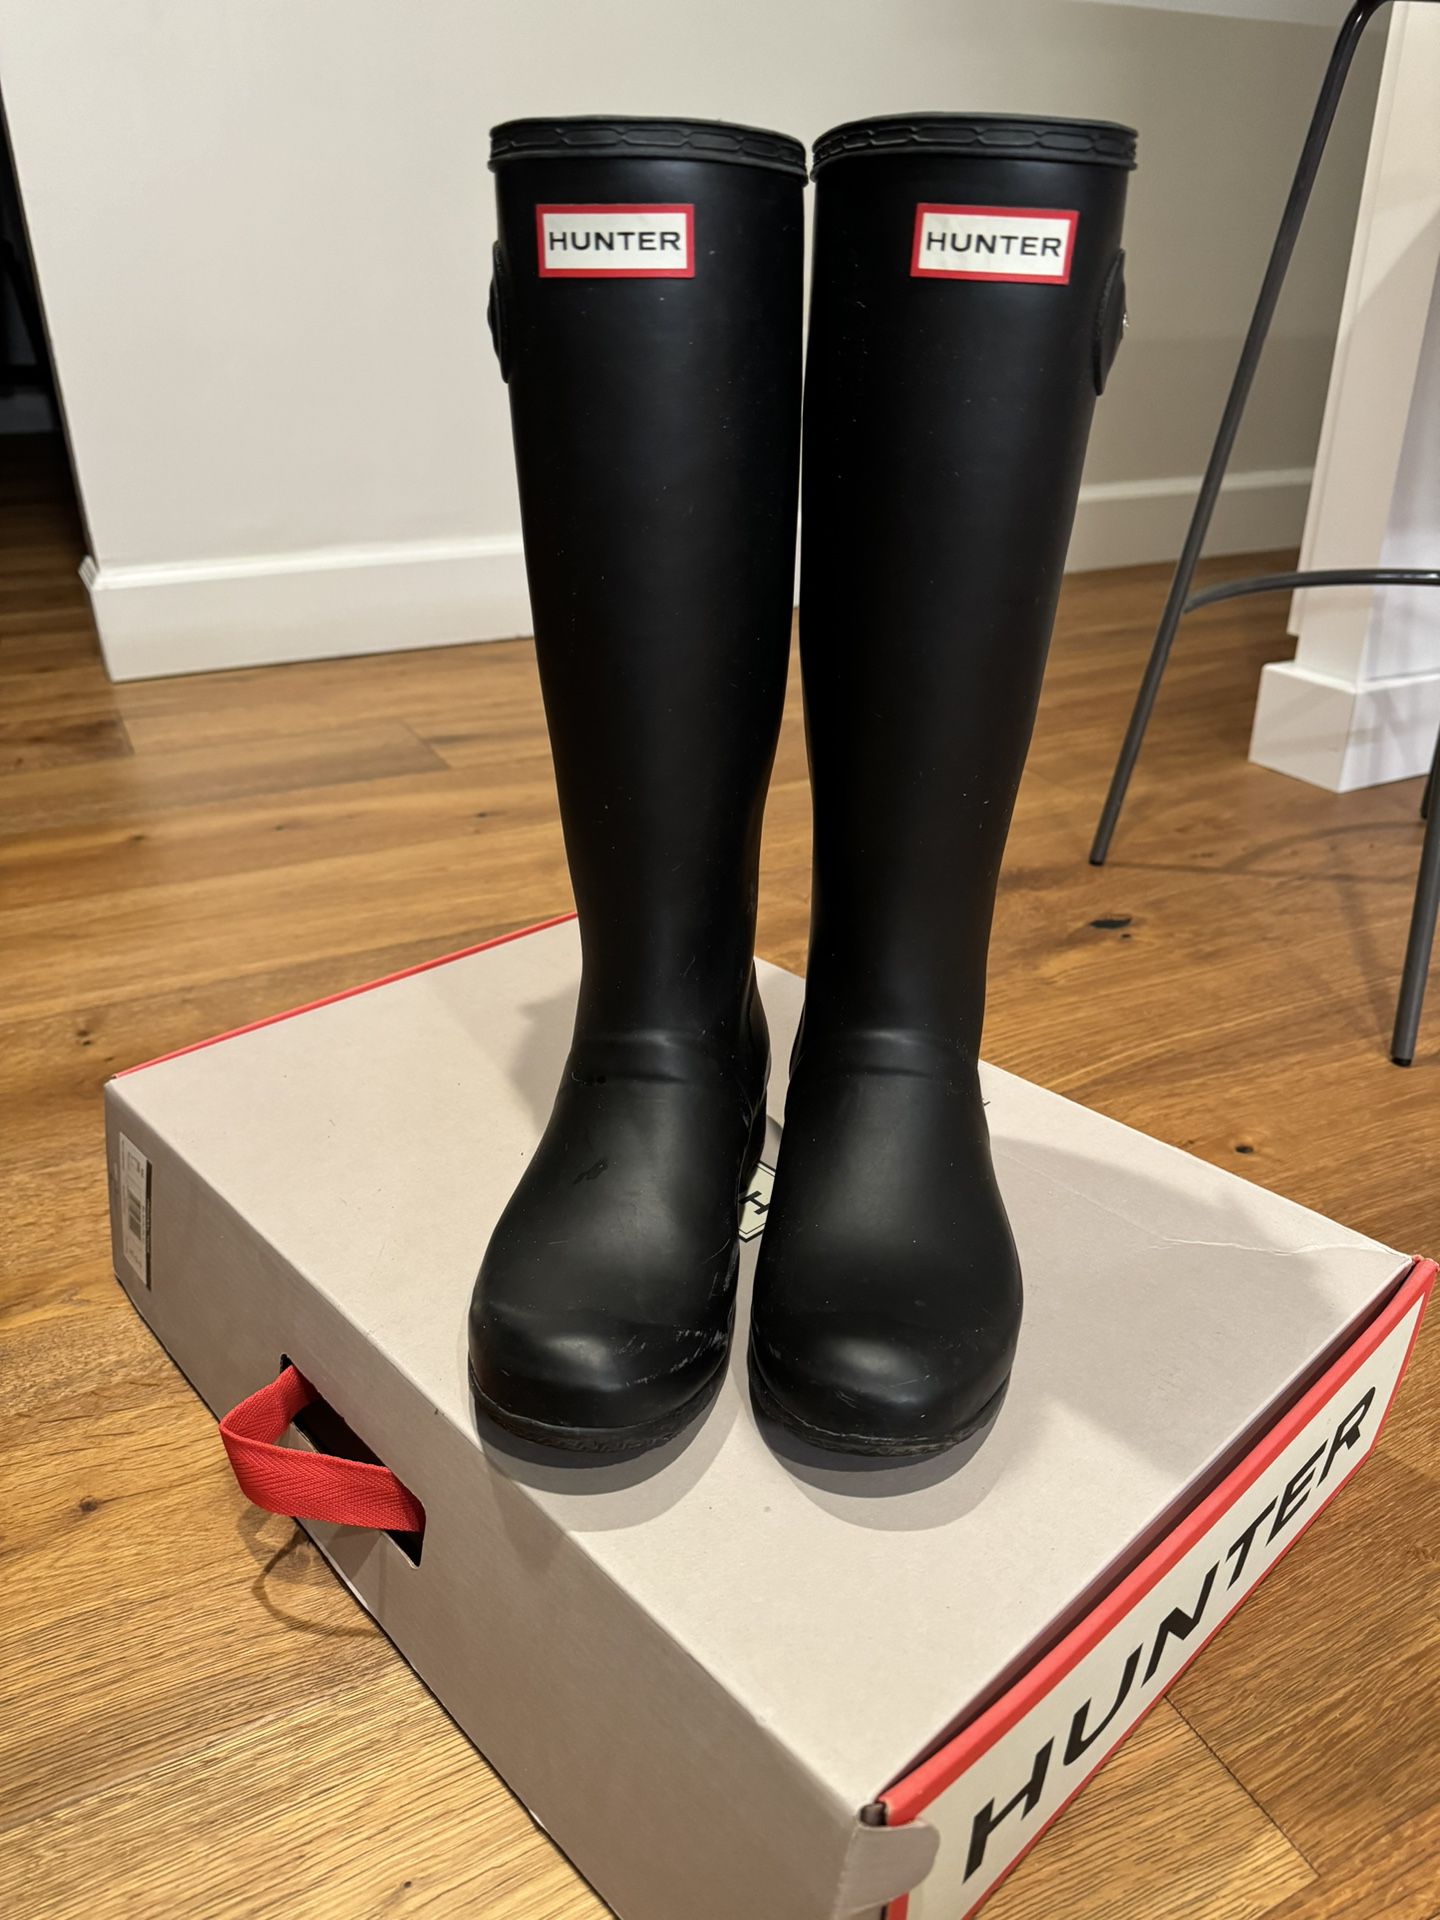 Hunter Women’s Tour Foldable Tall Rain Boot Size 7 Black